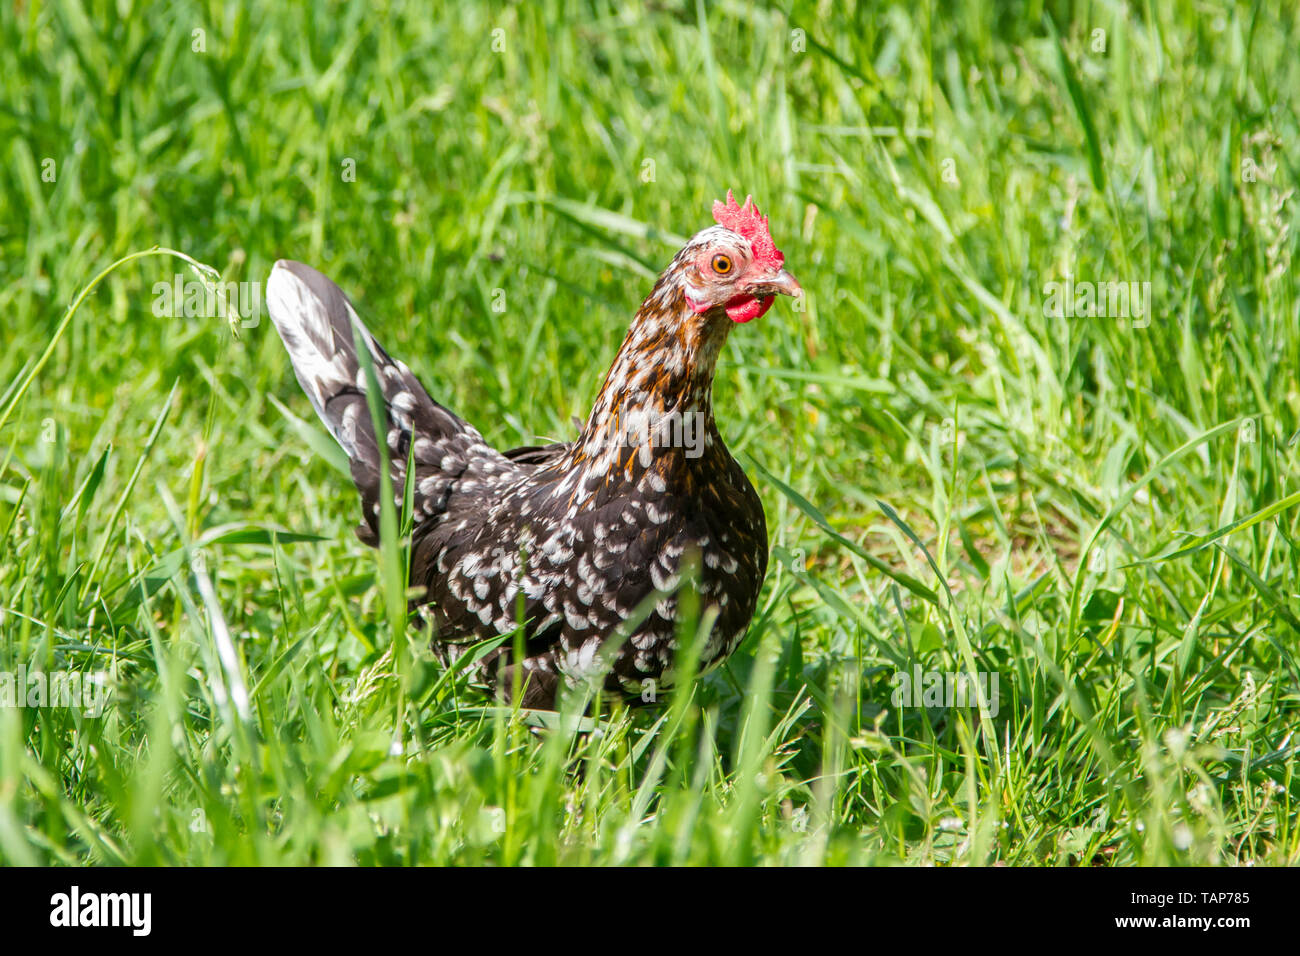 Steinhendl Steinpiperl Stoapiperl - - - Huhn - kritisch bedrohte Huhn züchten aus Österreich im freien Bereich (Gallus gallus domesticus) Stockfoto